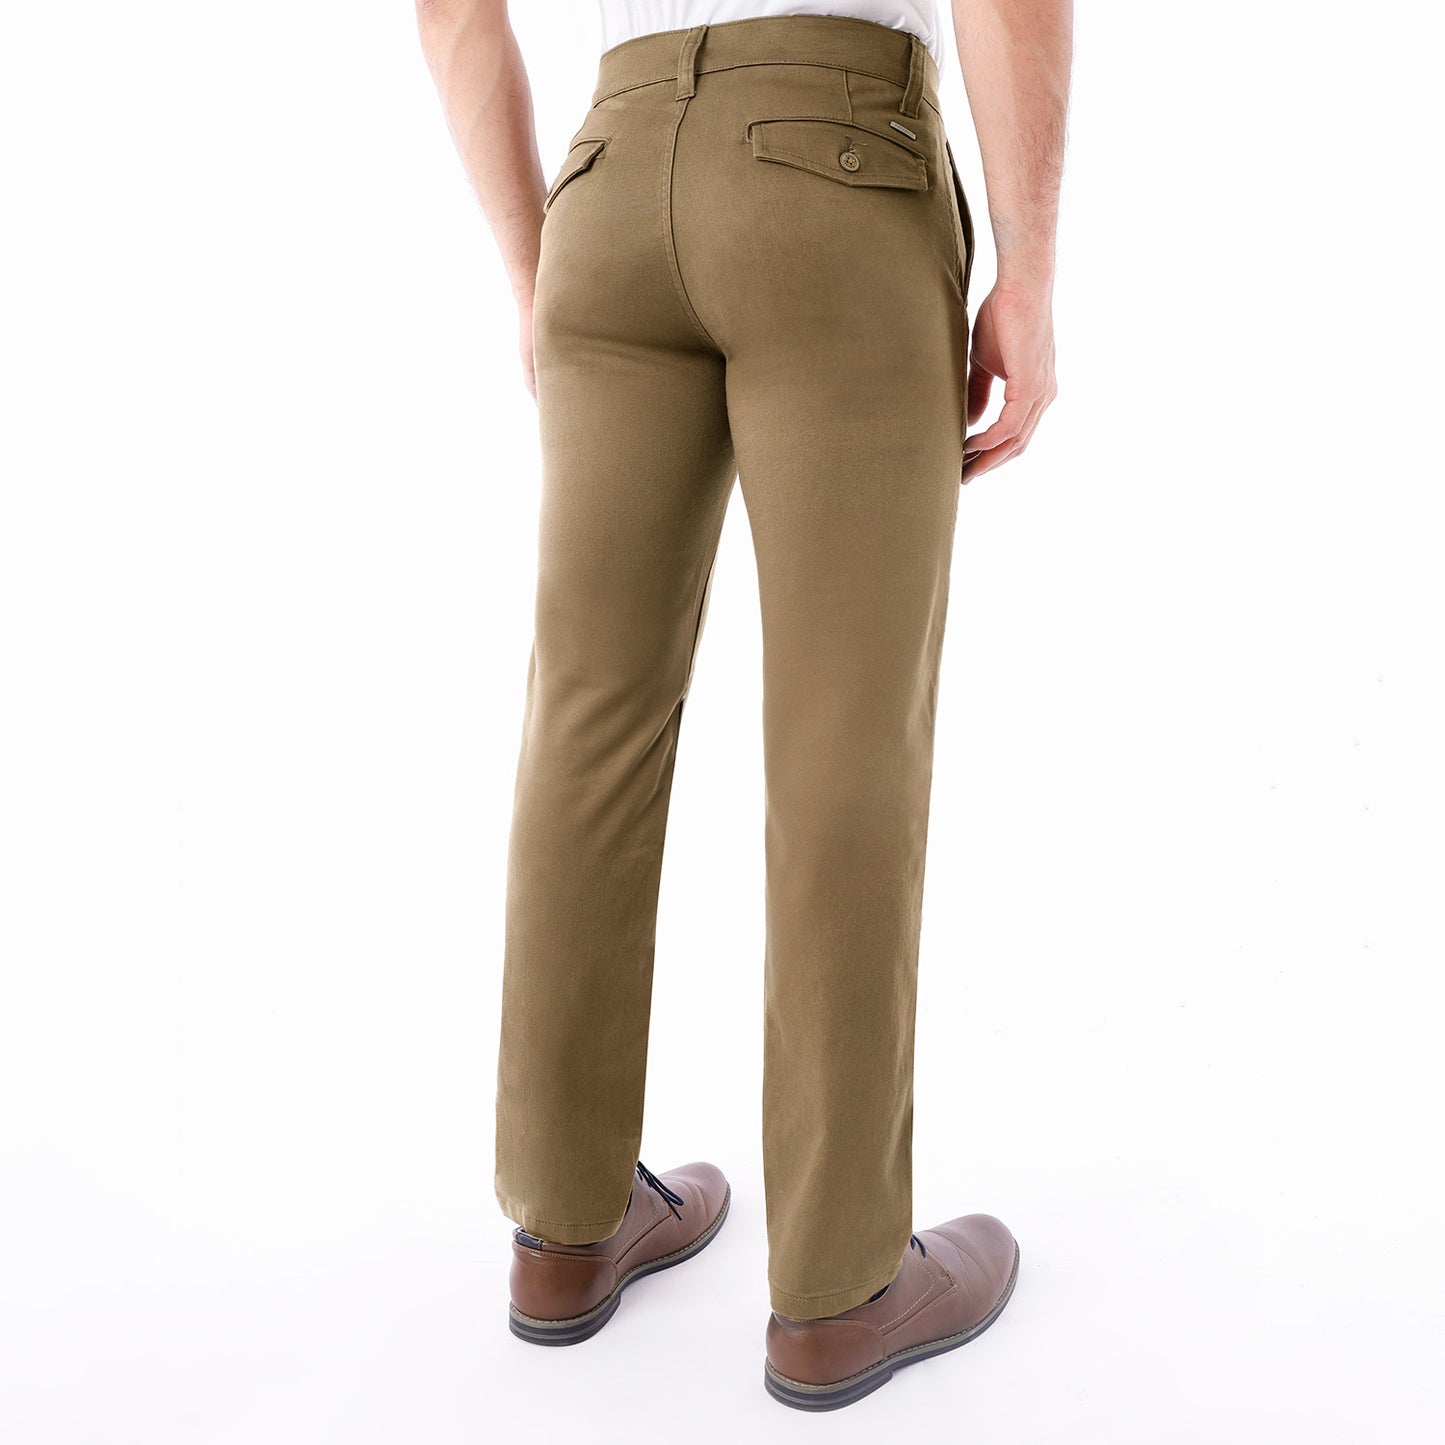 Pantalon Drill Hombre Satinado Camello - 230880